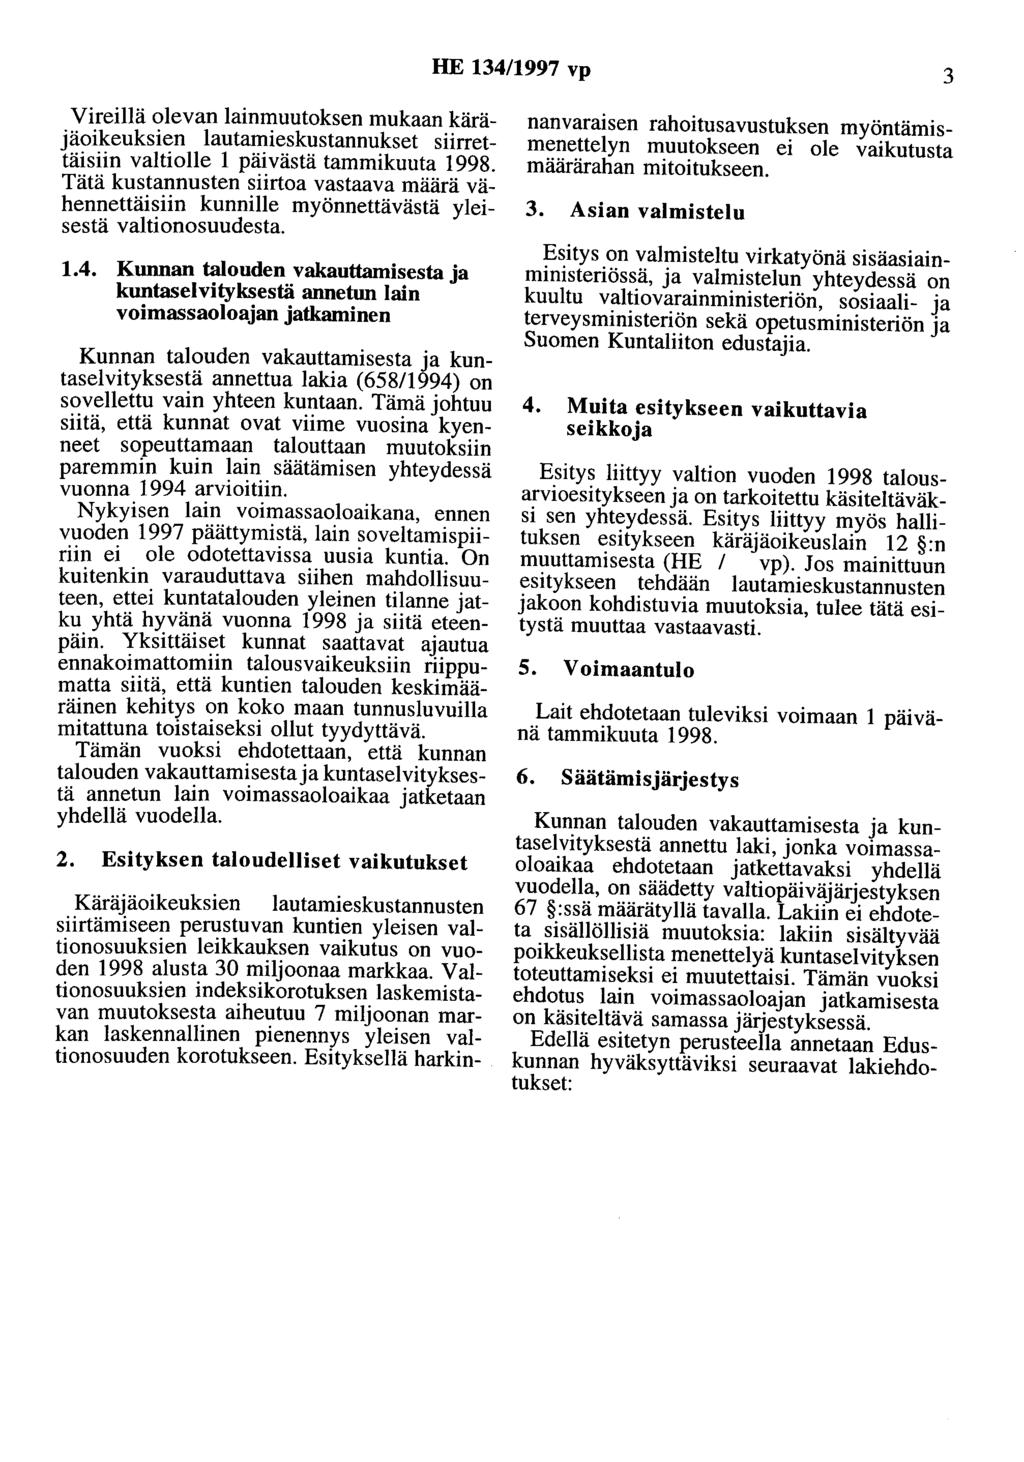 HE 134/1997 vp 3 Vireillä olevan lainmuutoksen mukaan käräjäoikeuksien lautamieskustannukset siirrettäisiin valtiolle 1 päivästä tammikuuta 1998.